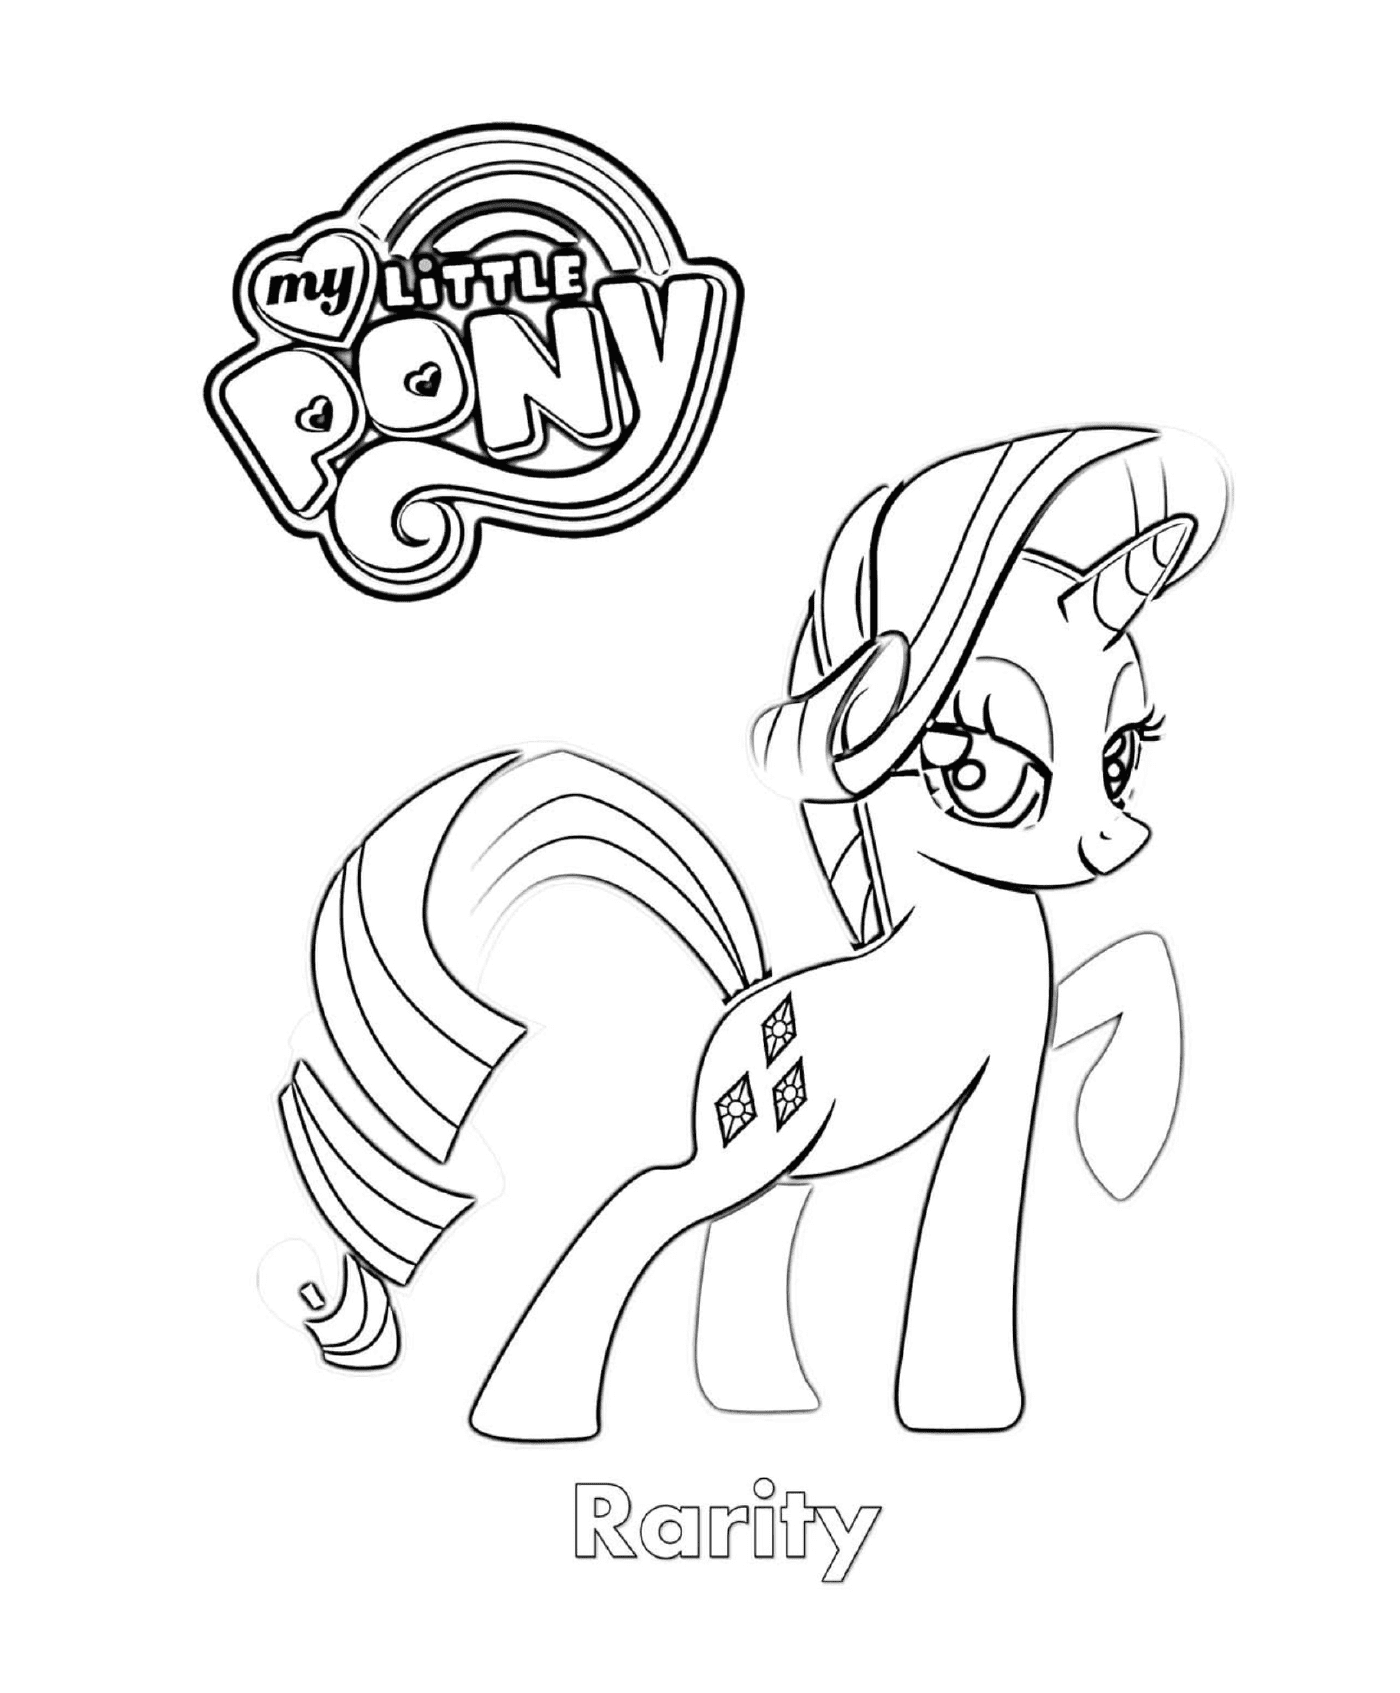  Rarity, a cute pony 